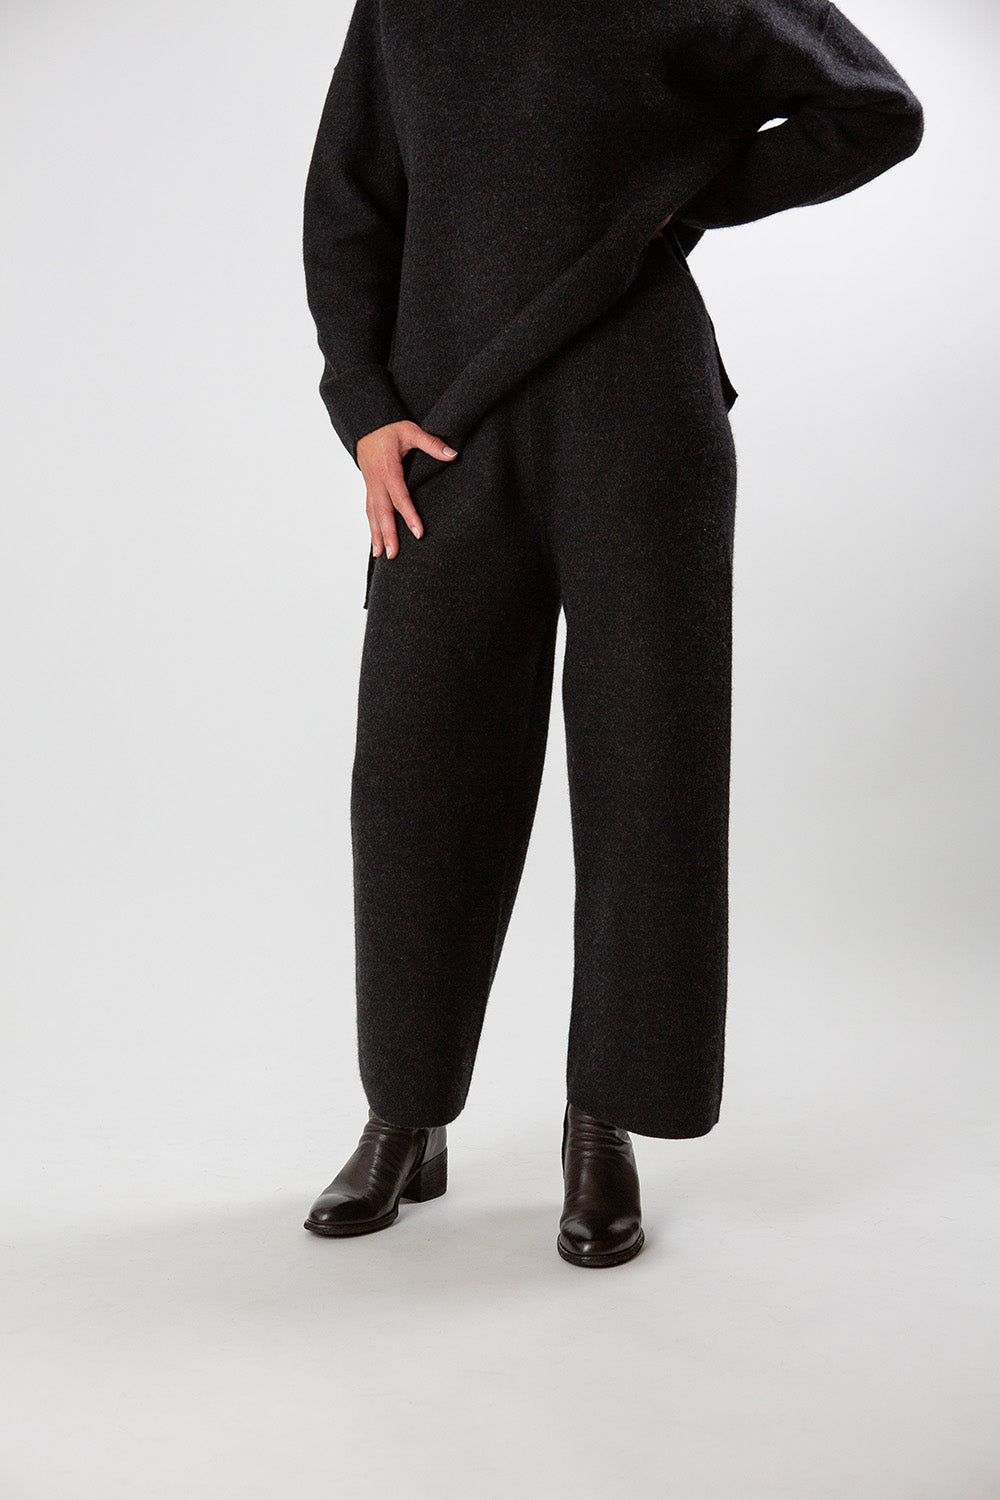 Lauren Manoogian Double Knit Pants In Black Melange